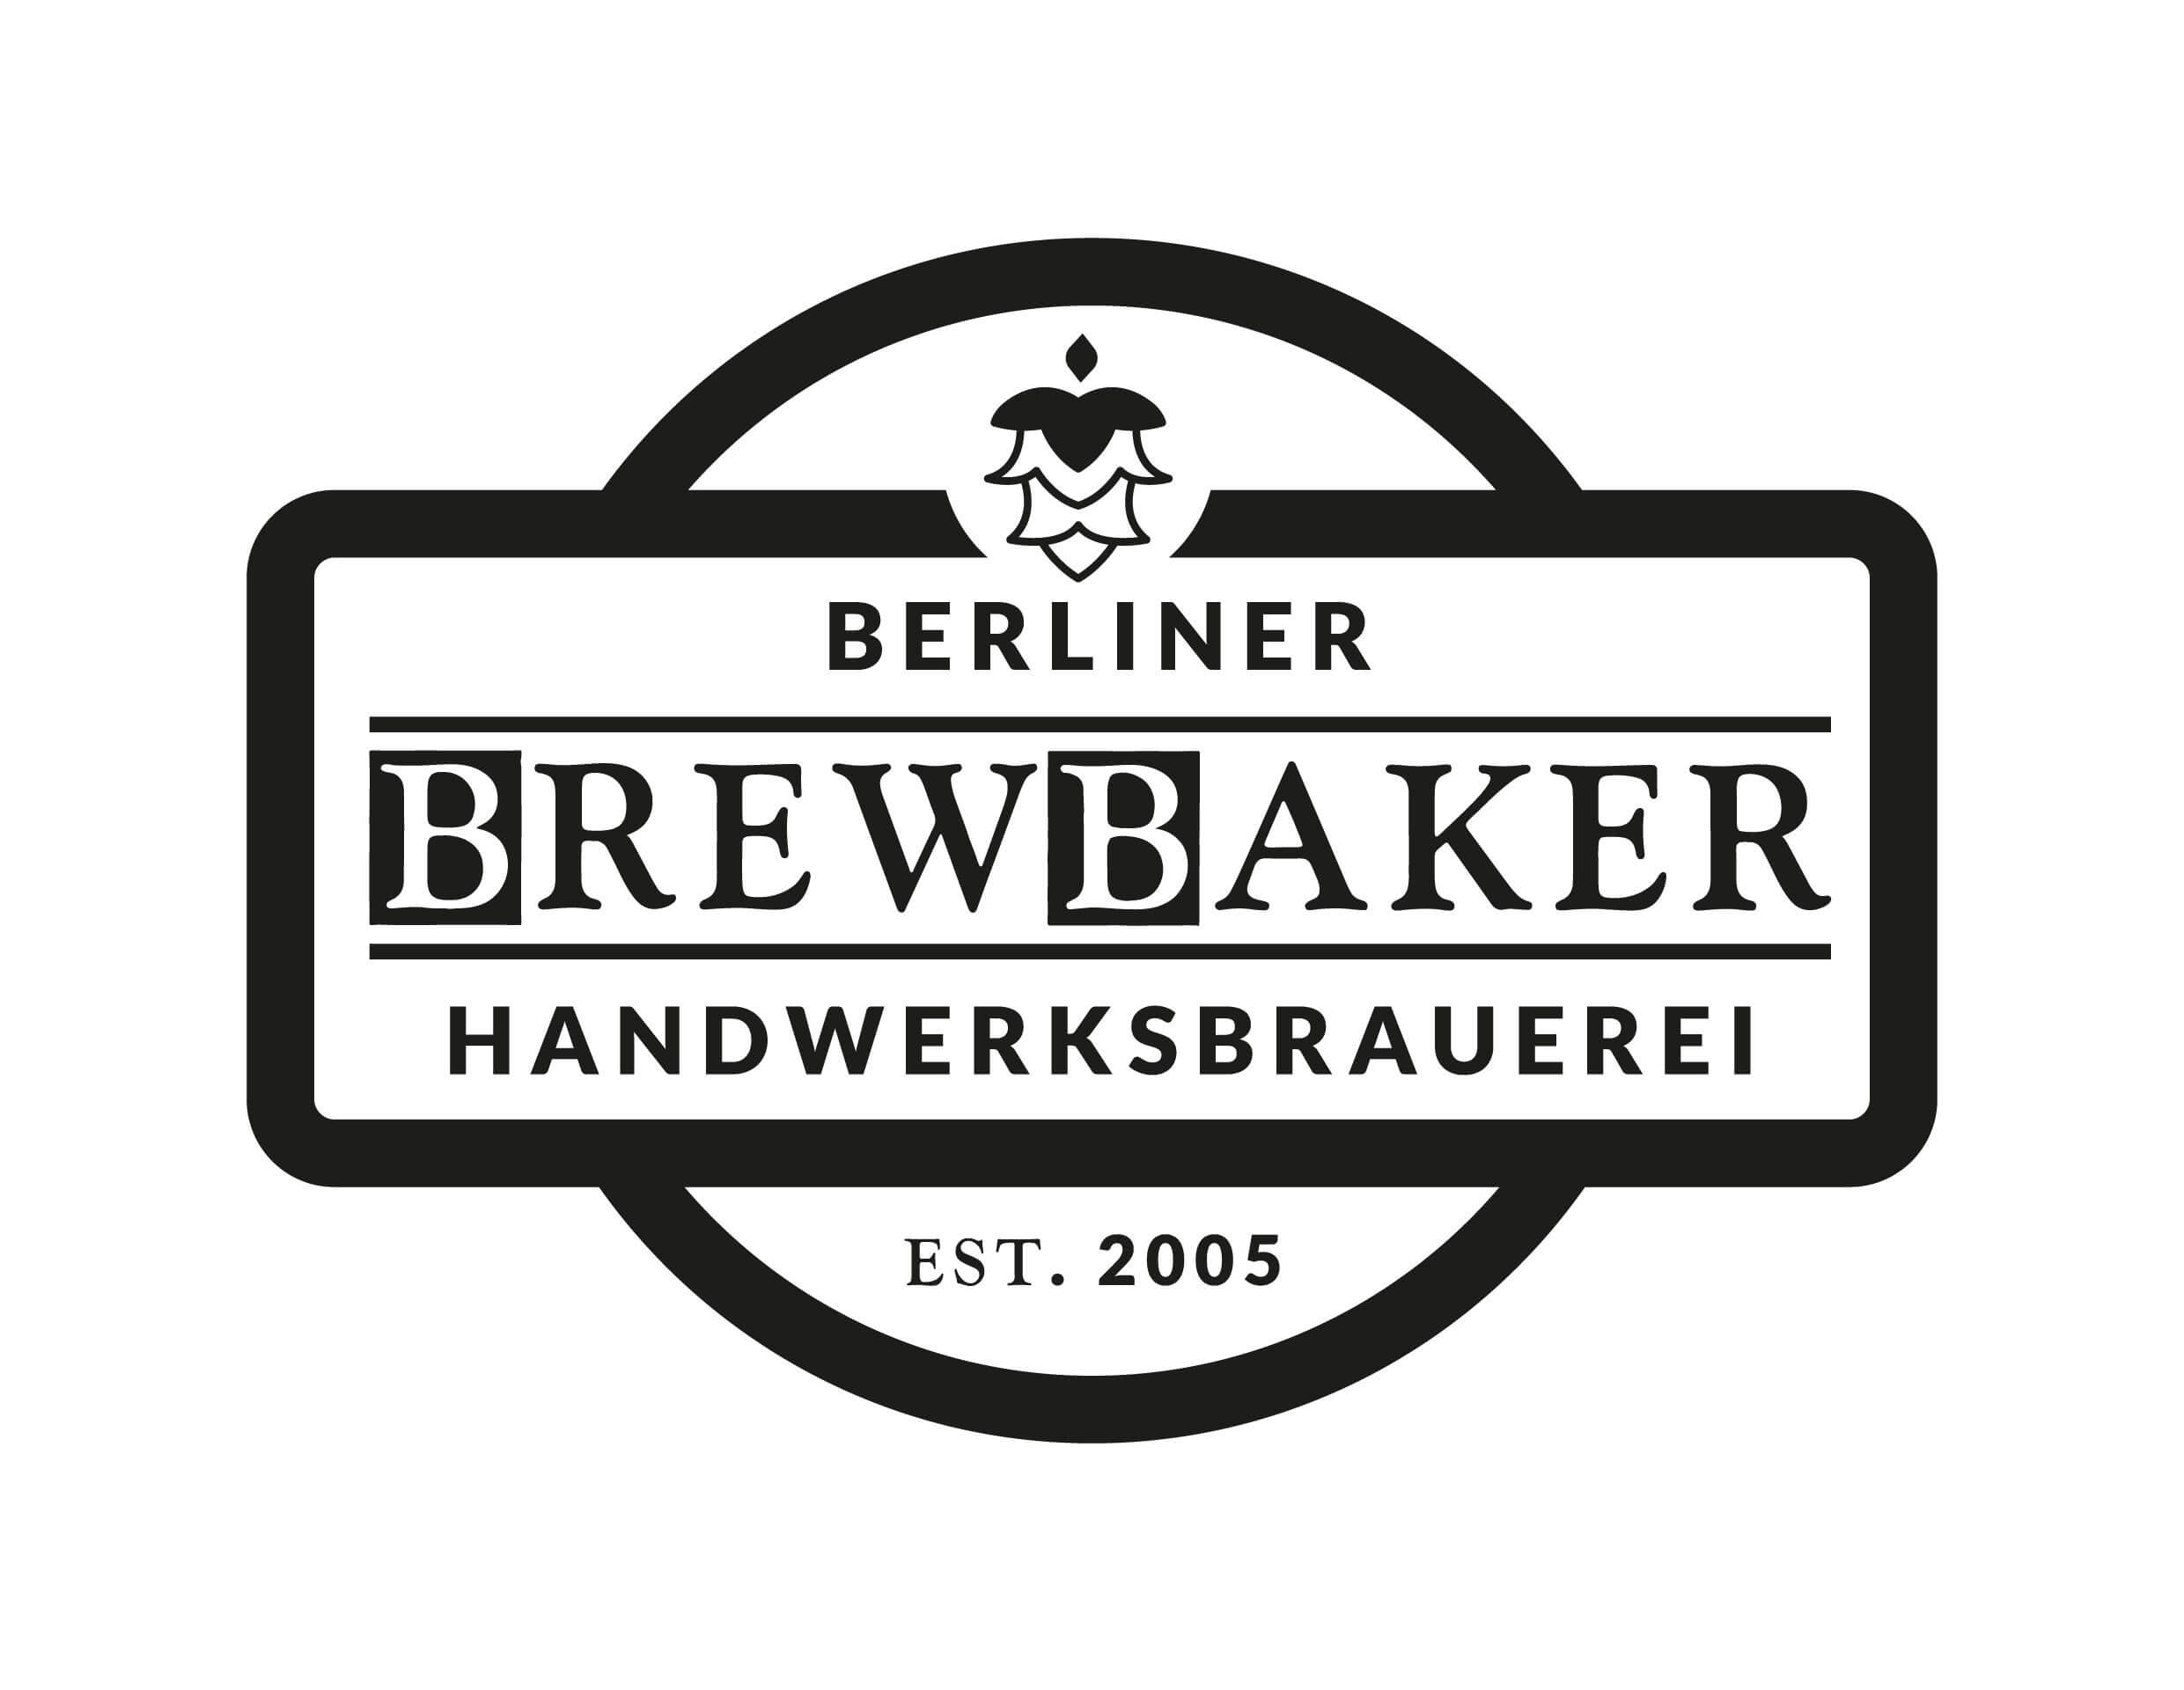 BrewBaker